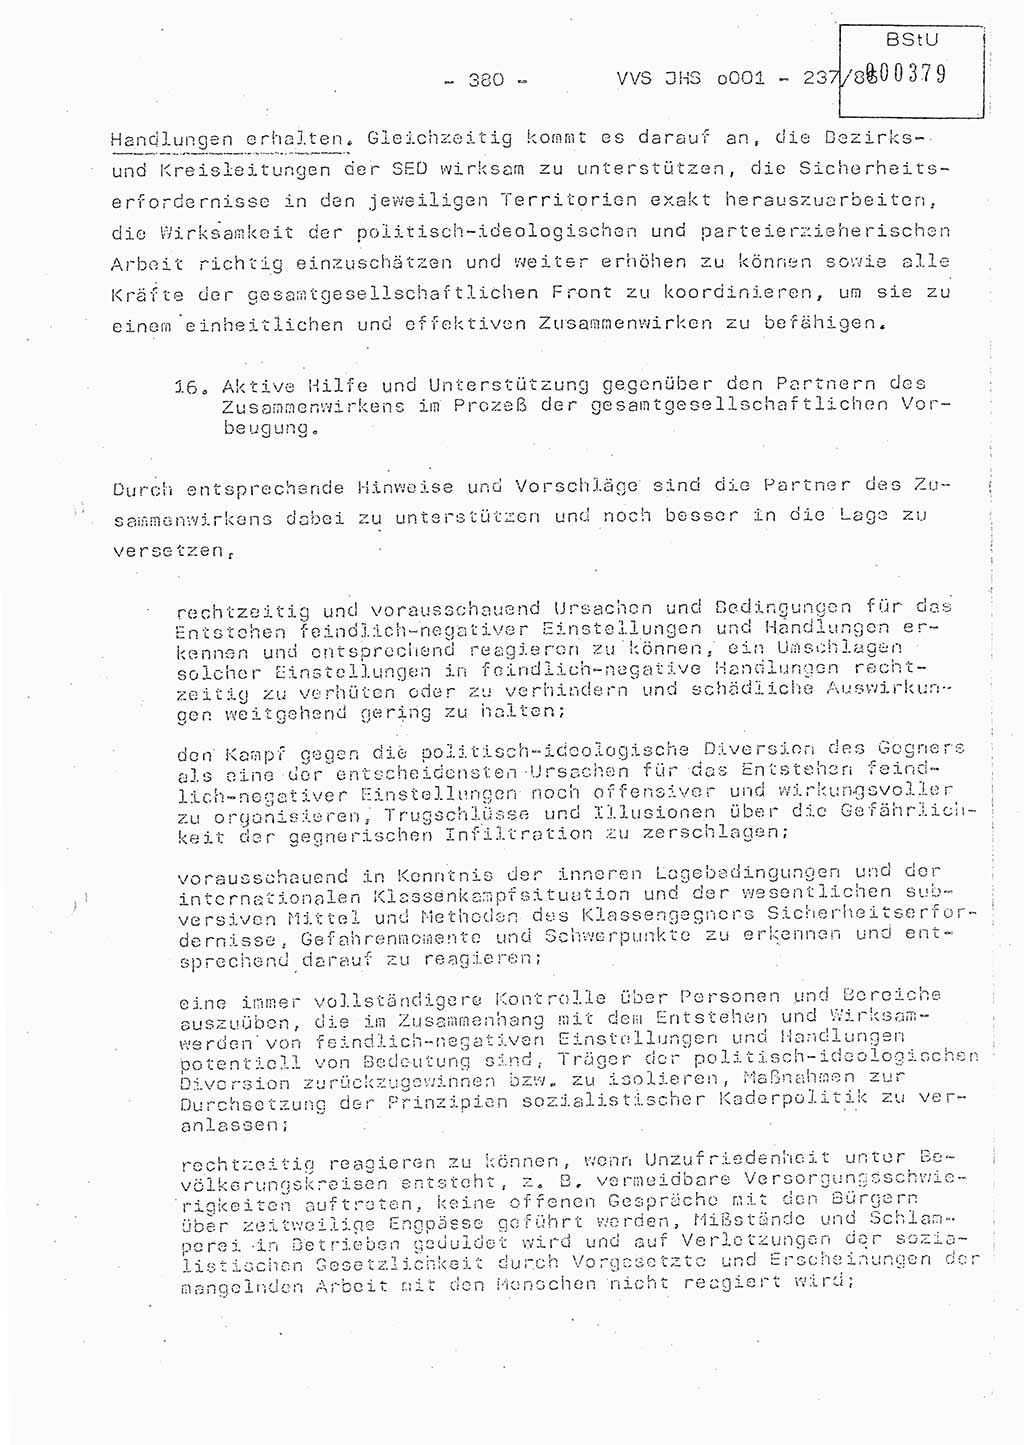 Dissertation Oberstleutnant Peter Jakulski (JHS), Oberstleutnat Christian Rudolph (HA Ⅸ), Major Horst Böttger (ZMD), Major Wolfgang Grüneberg (JHS), Major Albert Meutsch (JHS), Ministerium für Staatssicherheit (MfS) [Deutsche Demokratische Republik (DDR)], Juristische Hochschule (JHS), Vertrauliche Verschlußsache (VVS) o001-237/85, Potsdam 1985, Seite 380 (Diss. MfS DDR JHS VVS o001-237/85 1985, S. 380)